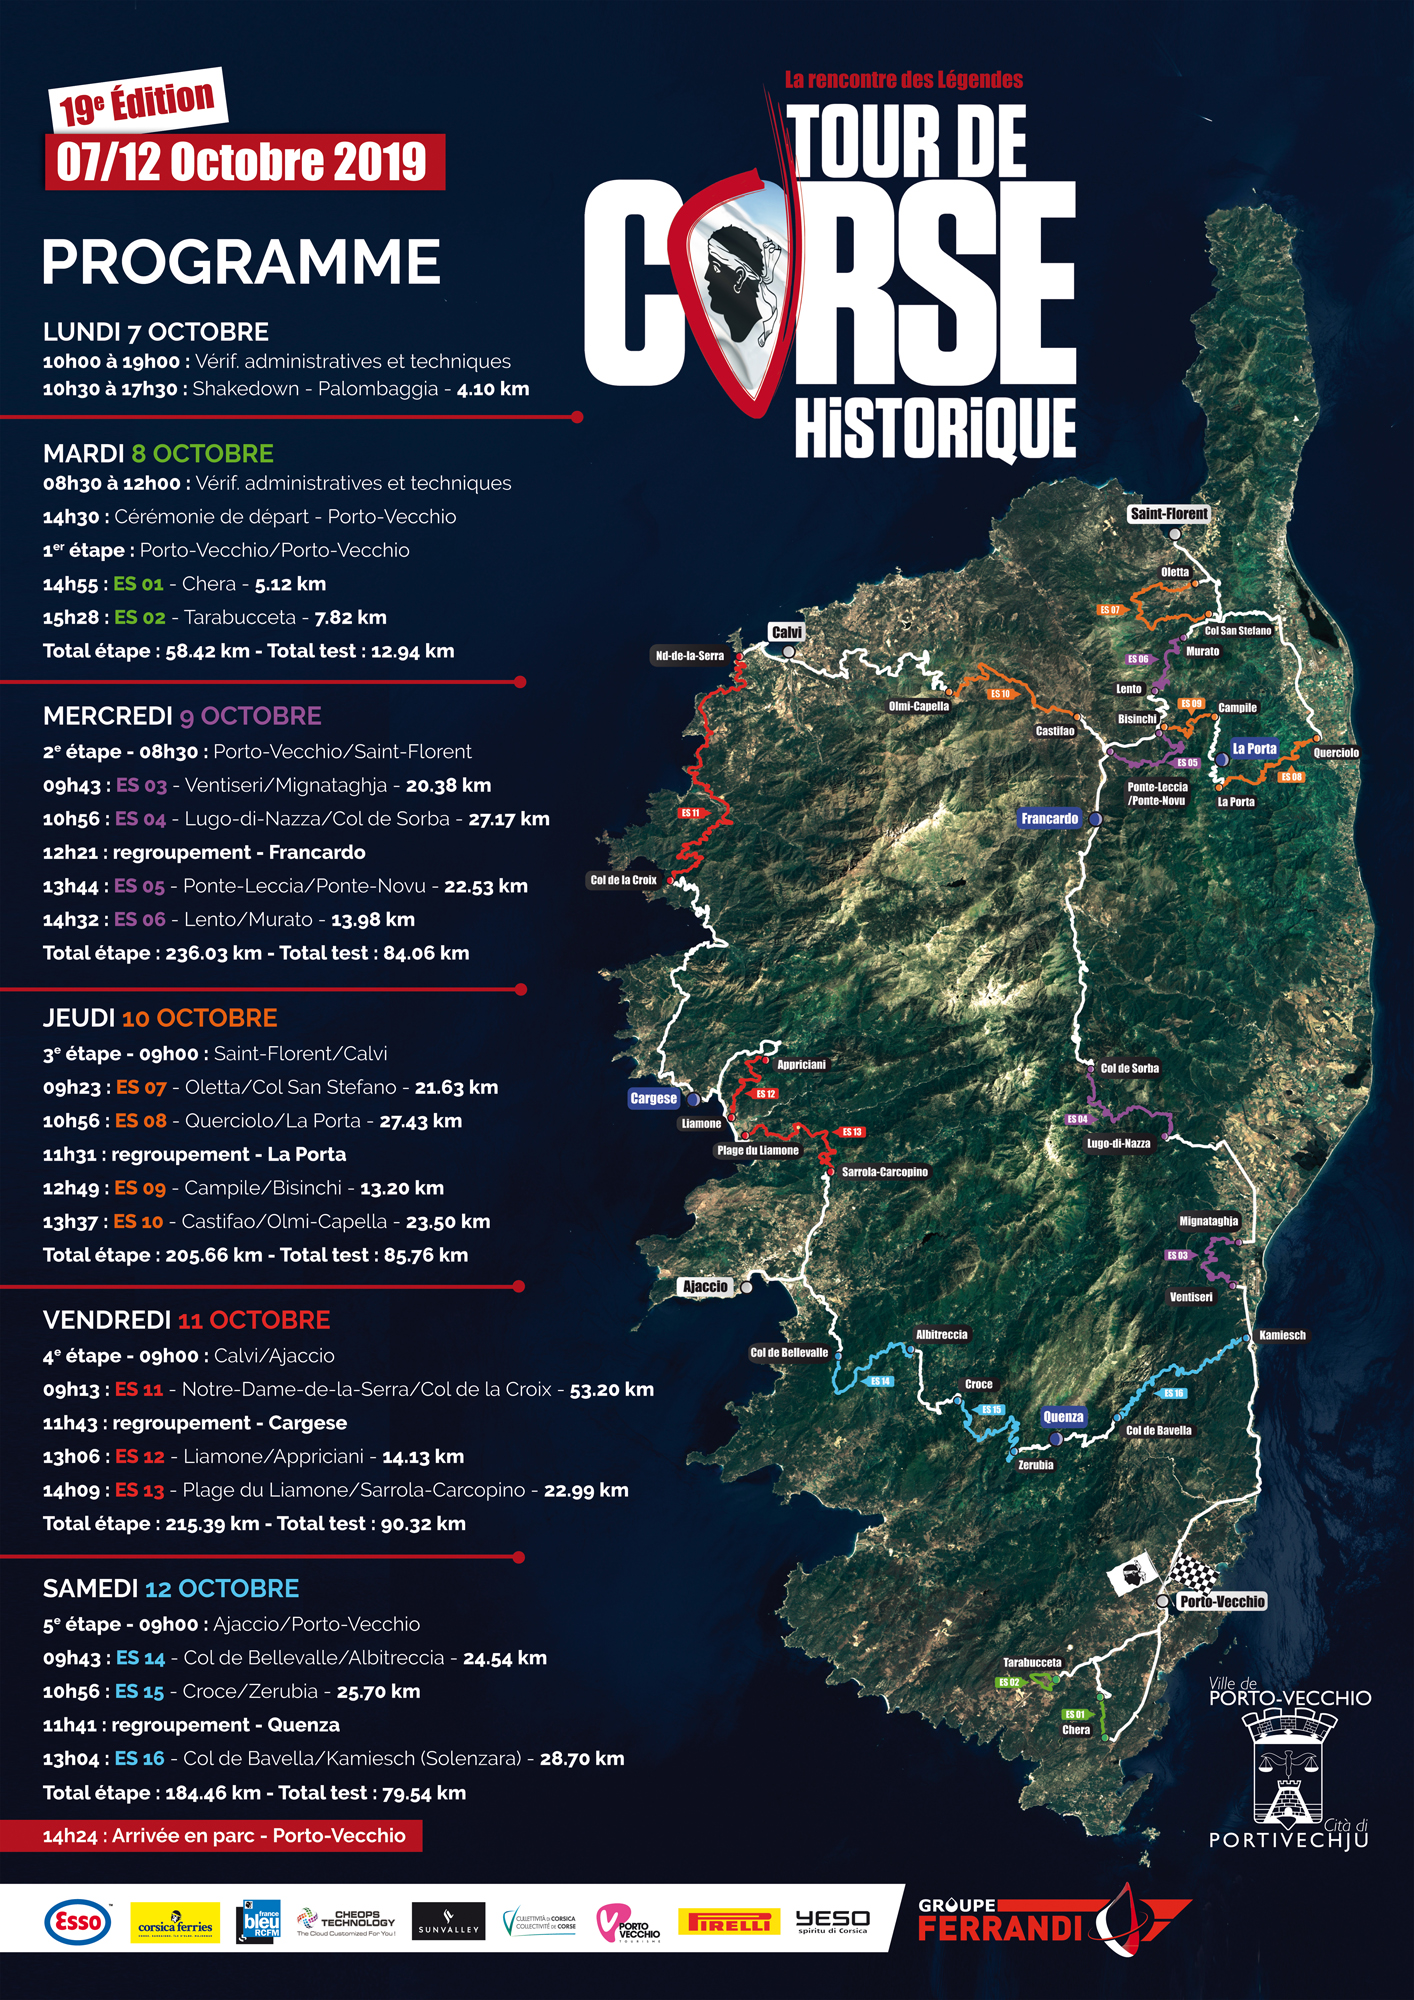 Le Tour de Corse historique sera en Balagne les jeudi 10 et vendredi 11 octobre